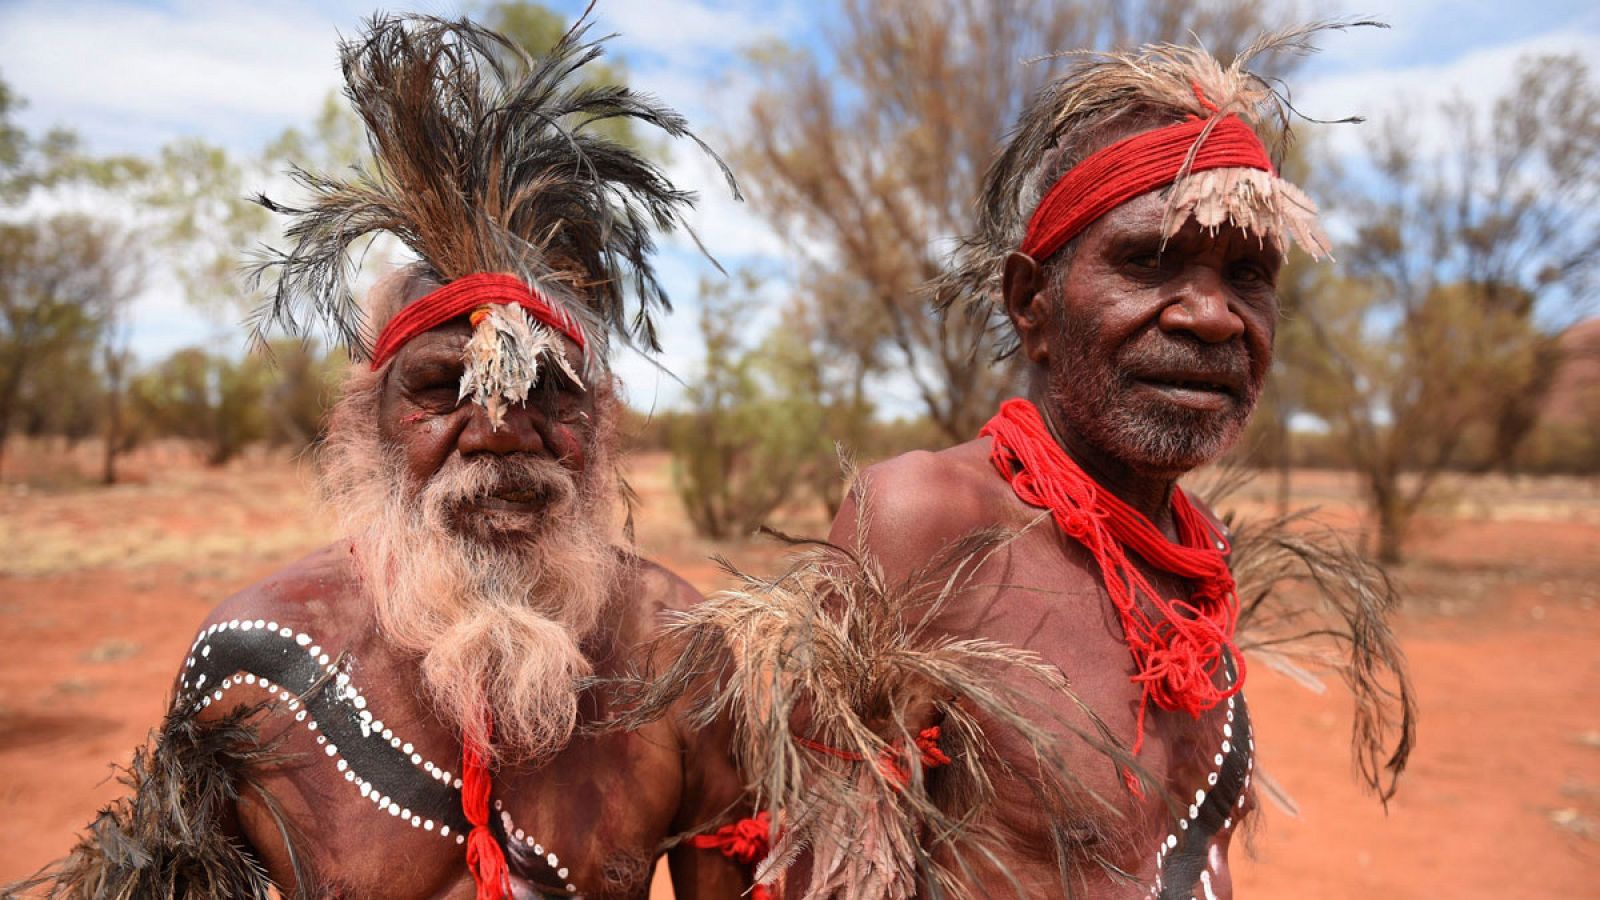 Imagen de archivo de dos aborígenes australianos.